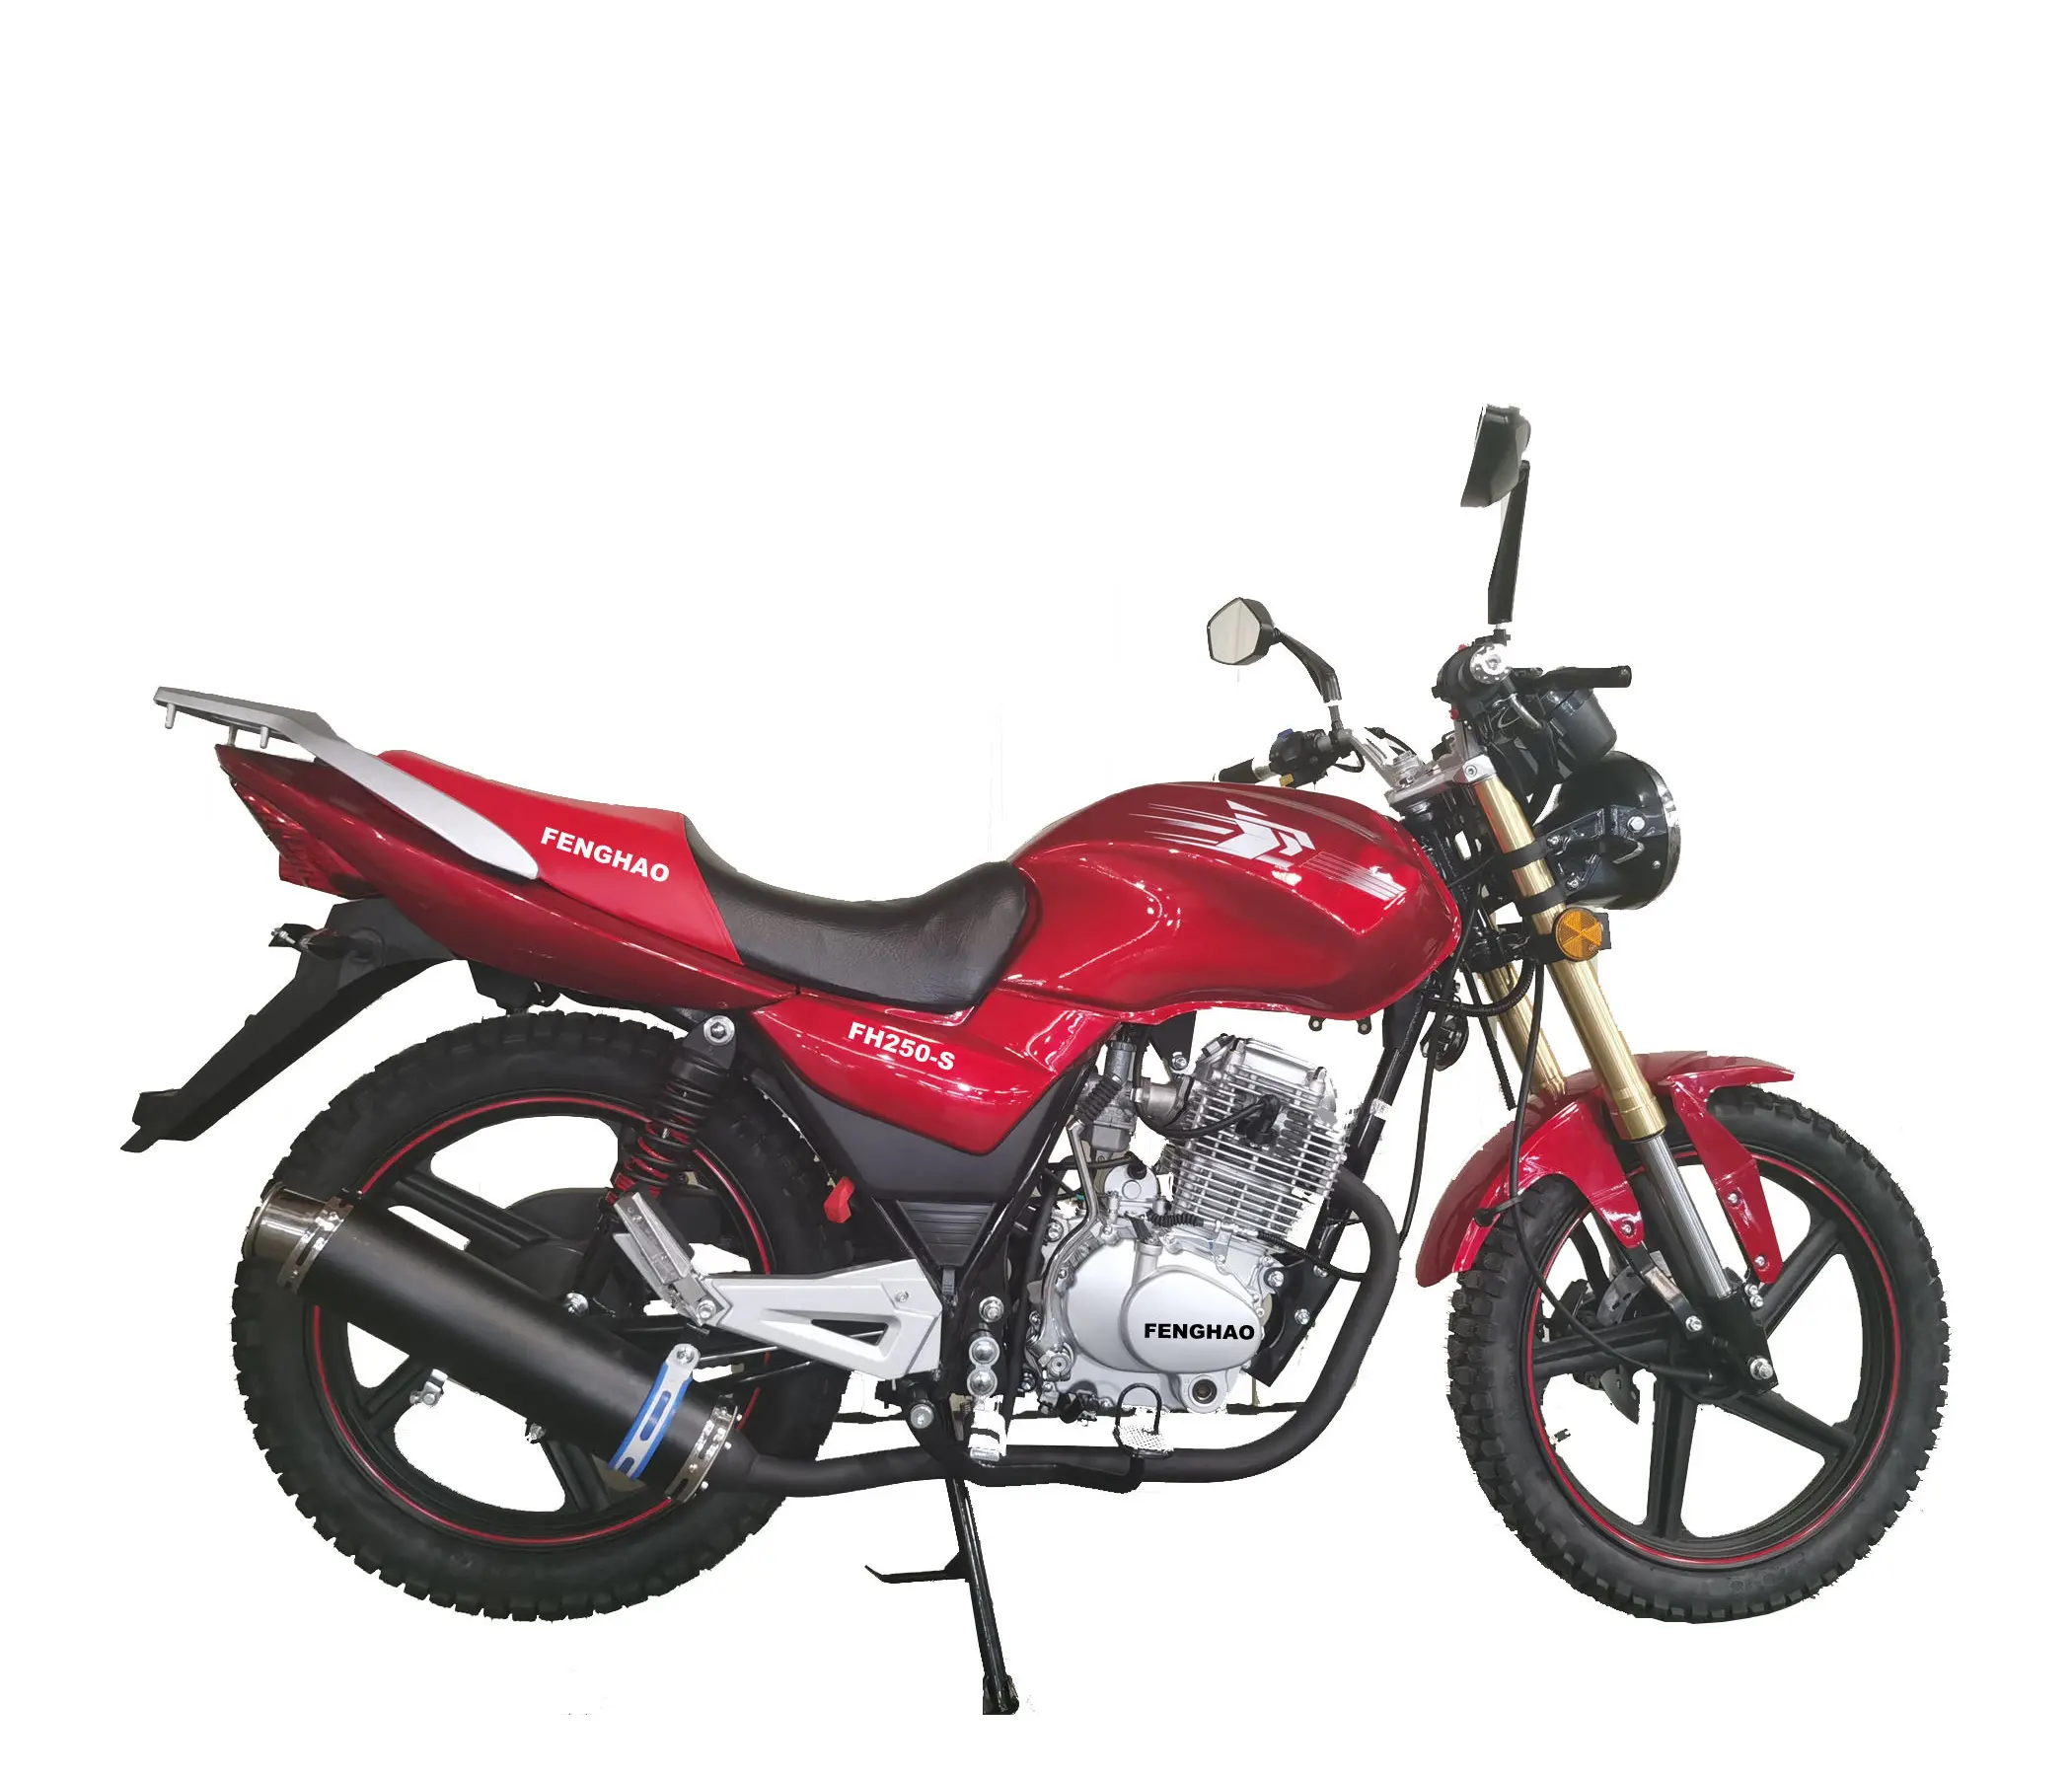 Vendita all'ingrosso durevole del motociclo della cina di sport ad alta velocità 250cc all'ingrosso di modo caldo FH250-SC